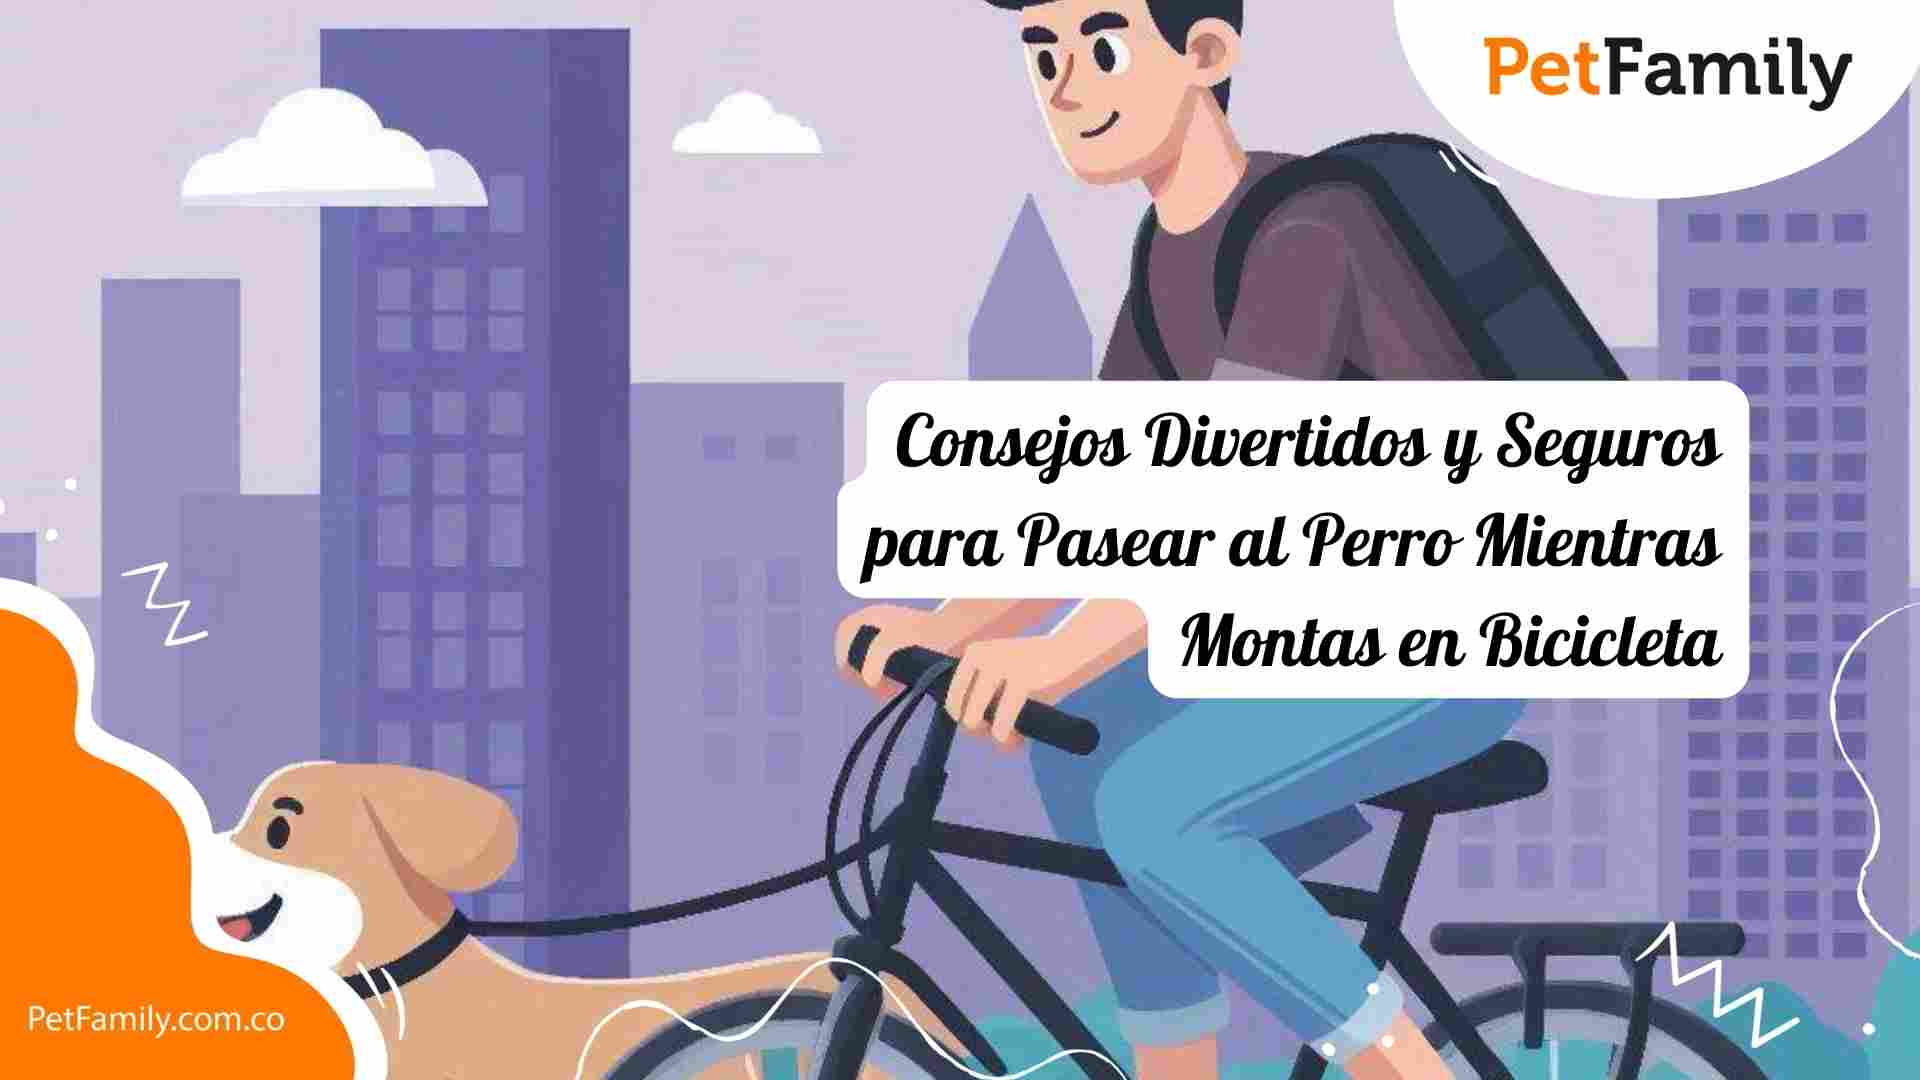 Pasear al Perro Mientras Montas en Bicicleta: Consejos Divertidos y Seguros para Lograrlo